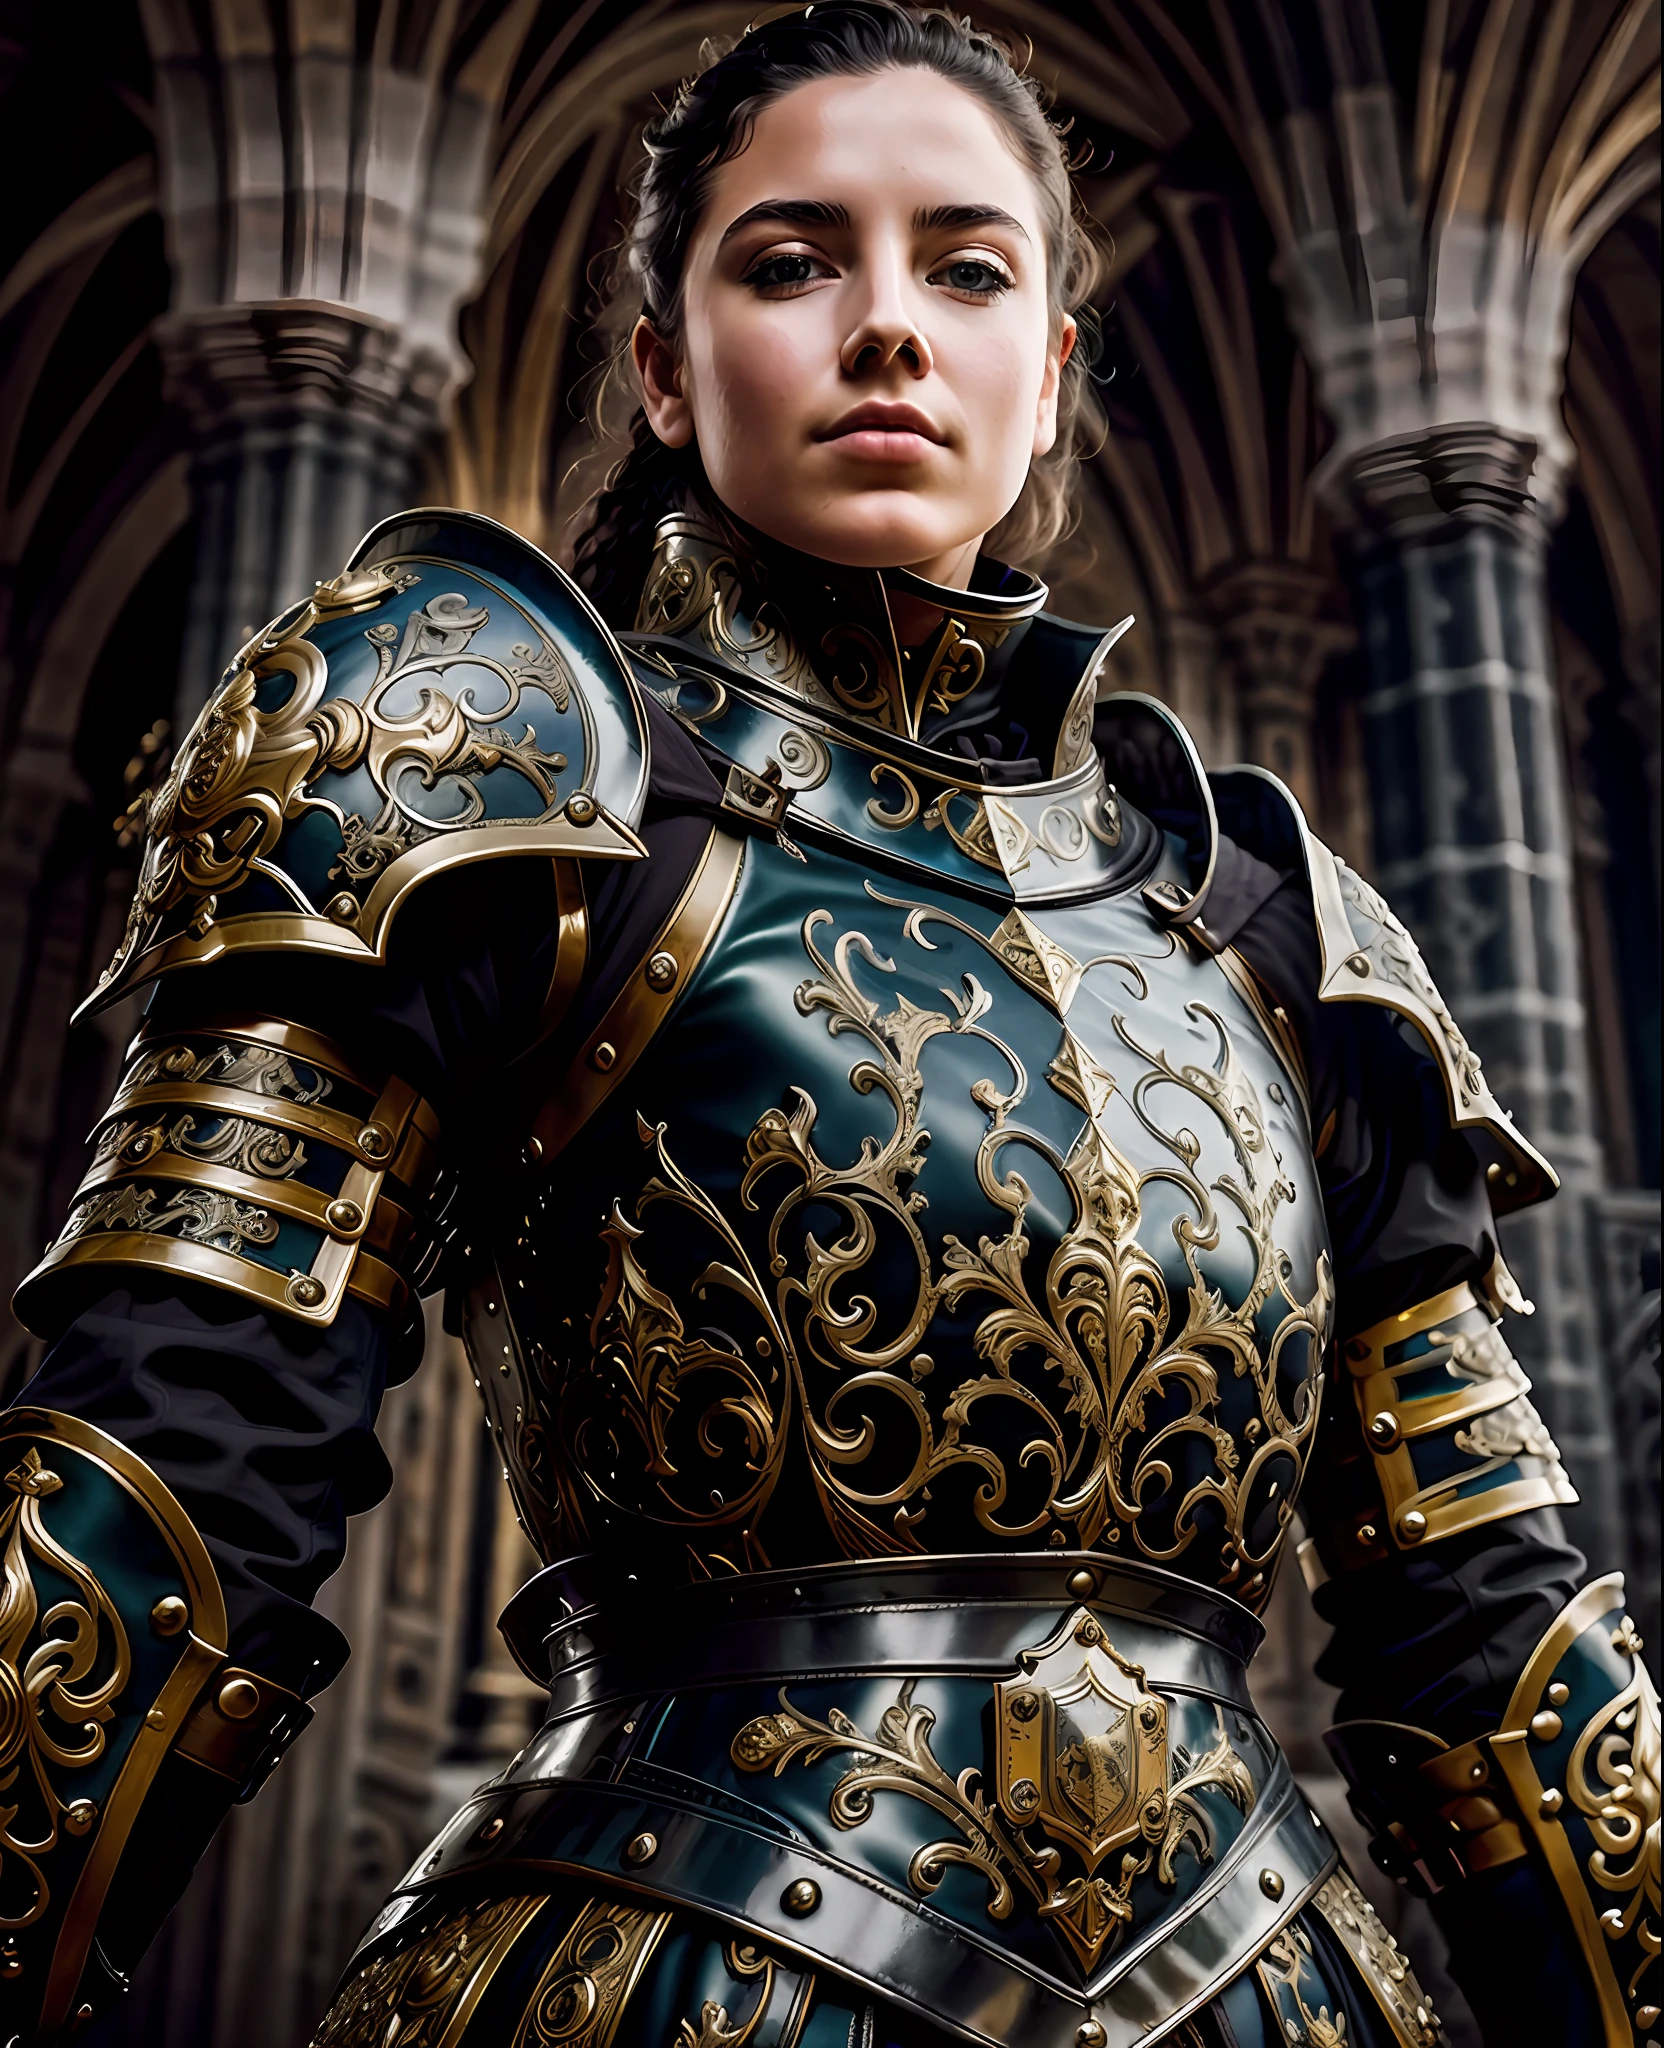 Meisterwerk, beste Qualität, Barock, realistisch, 1 Mädchen, Schwarze mittelalterliche filigrane Rüstung, Wappen, Oberkörper, den Betrachter anschauen